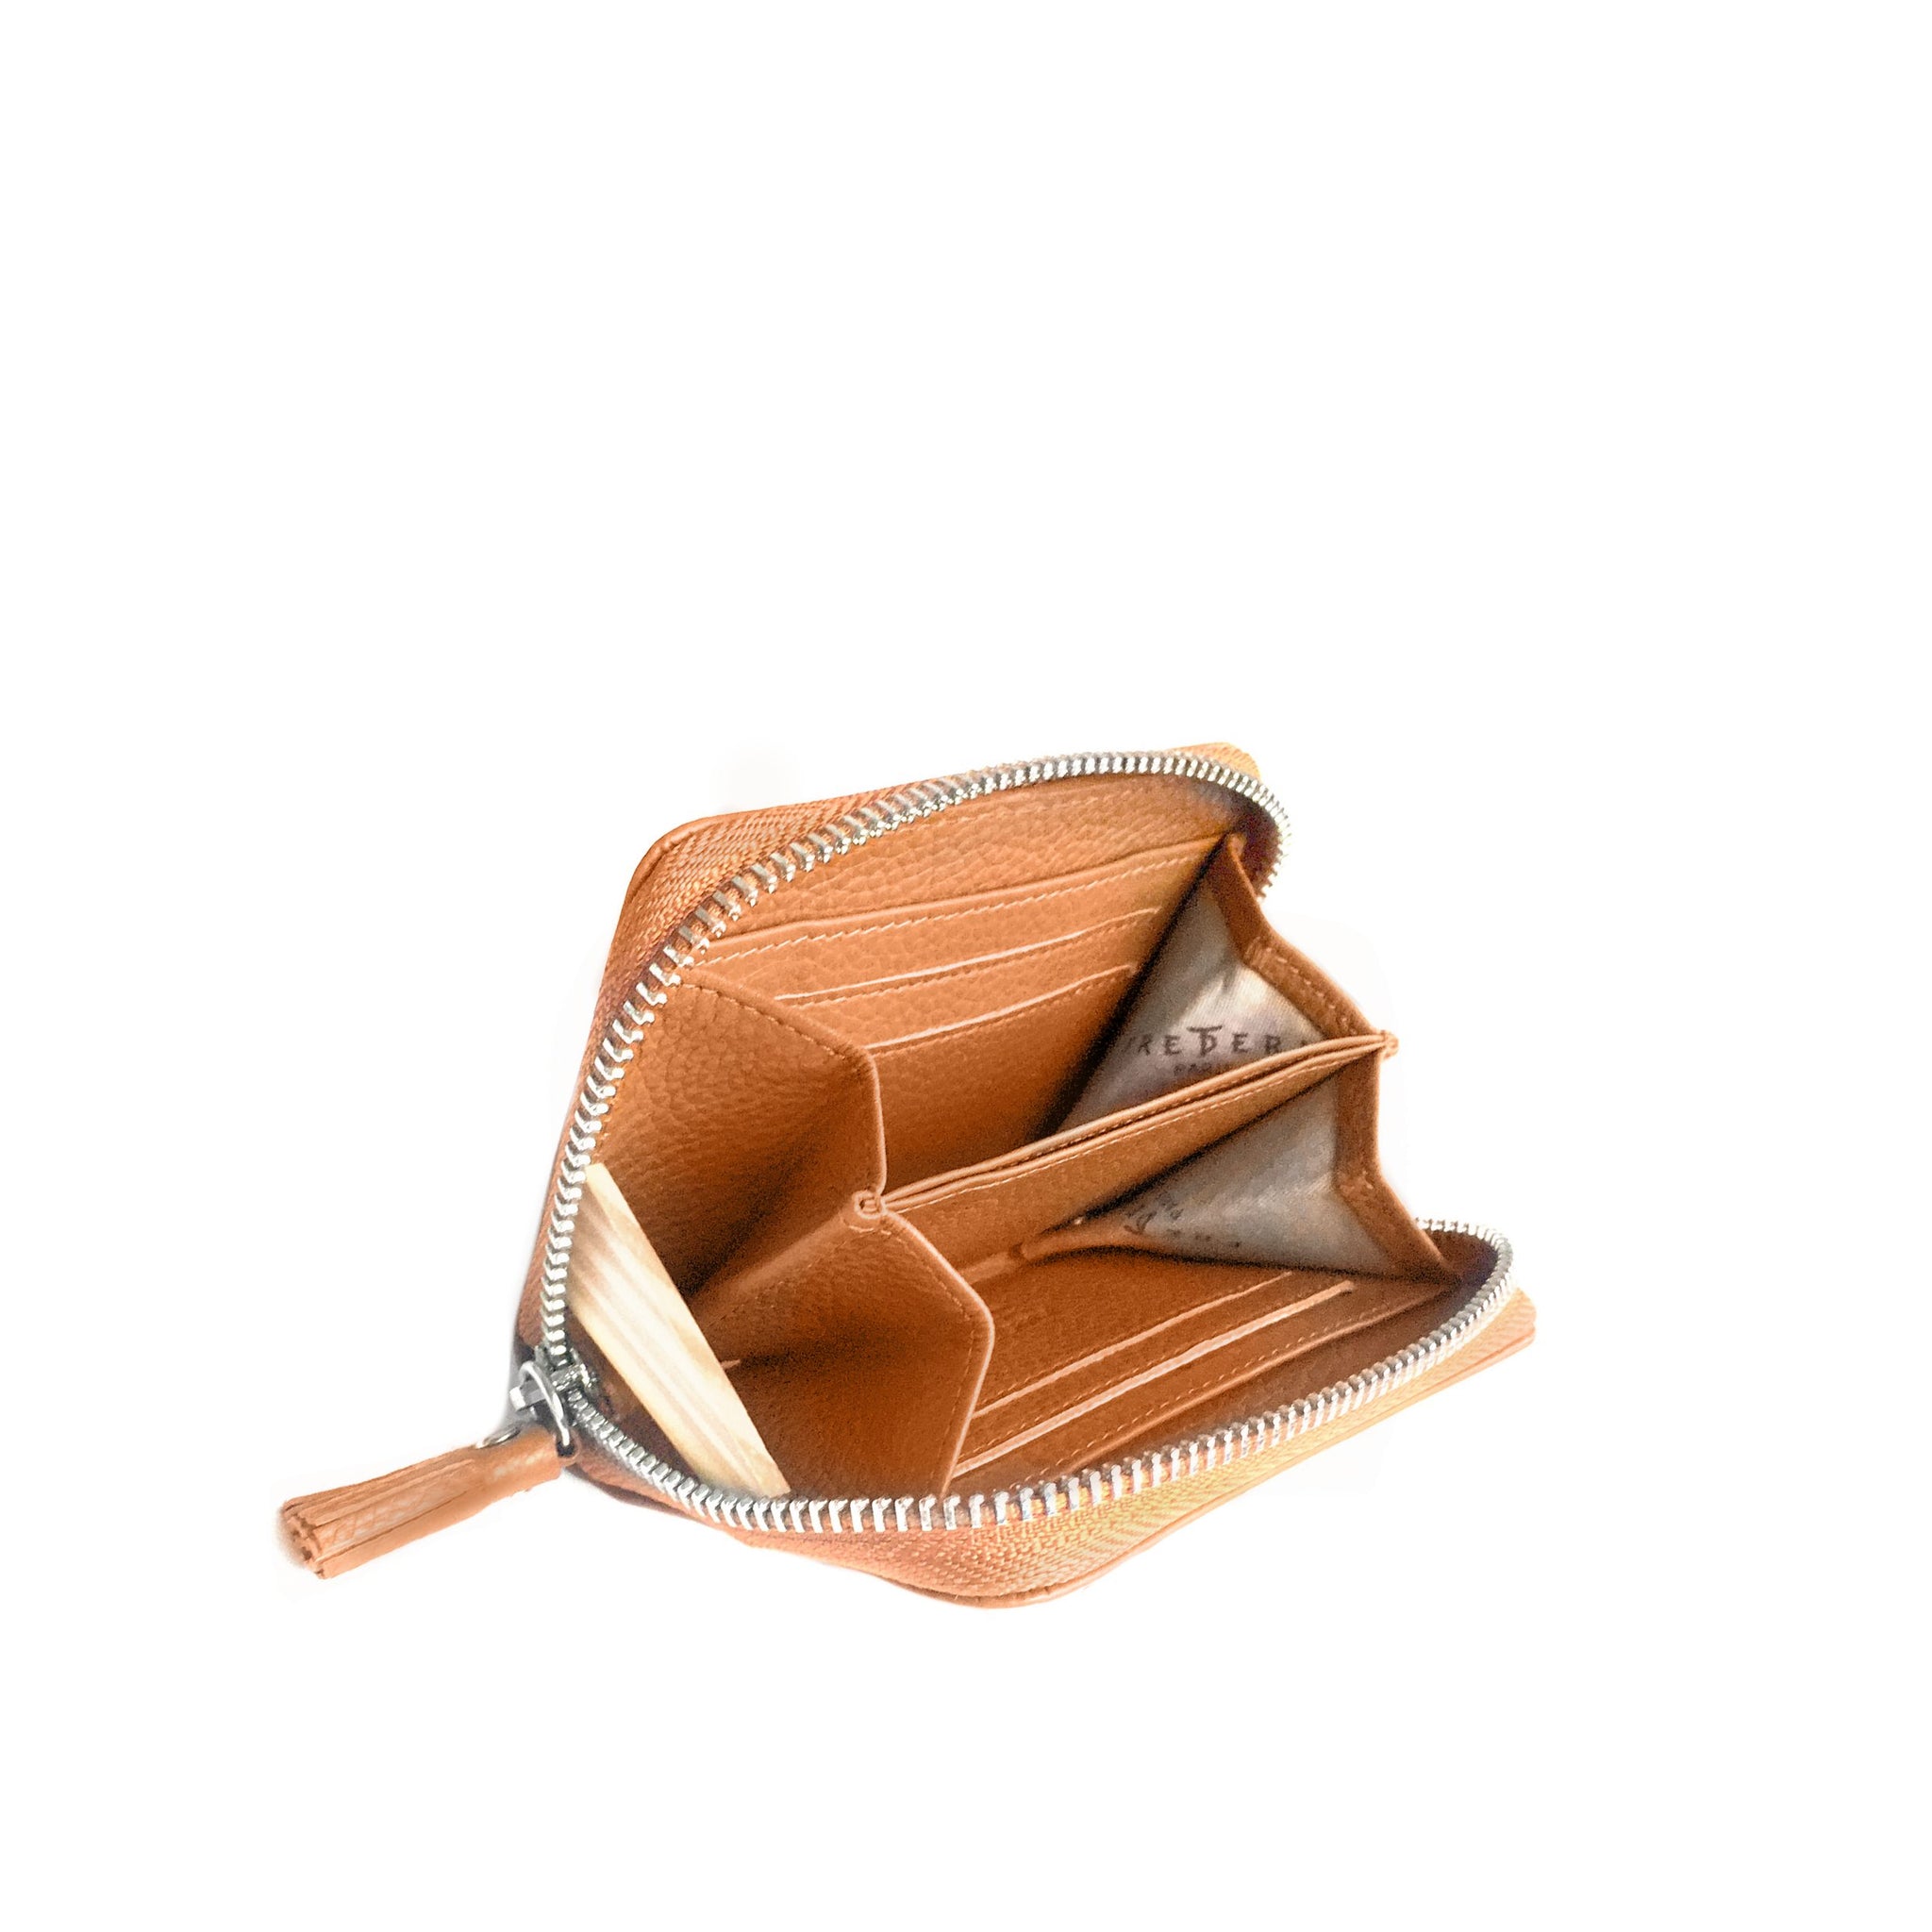 Leather wallet, from Paris Saint-Honoré boutique – Obilis Paris